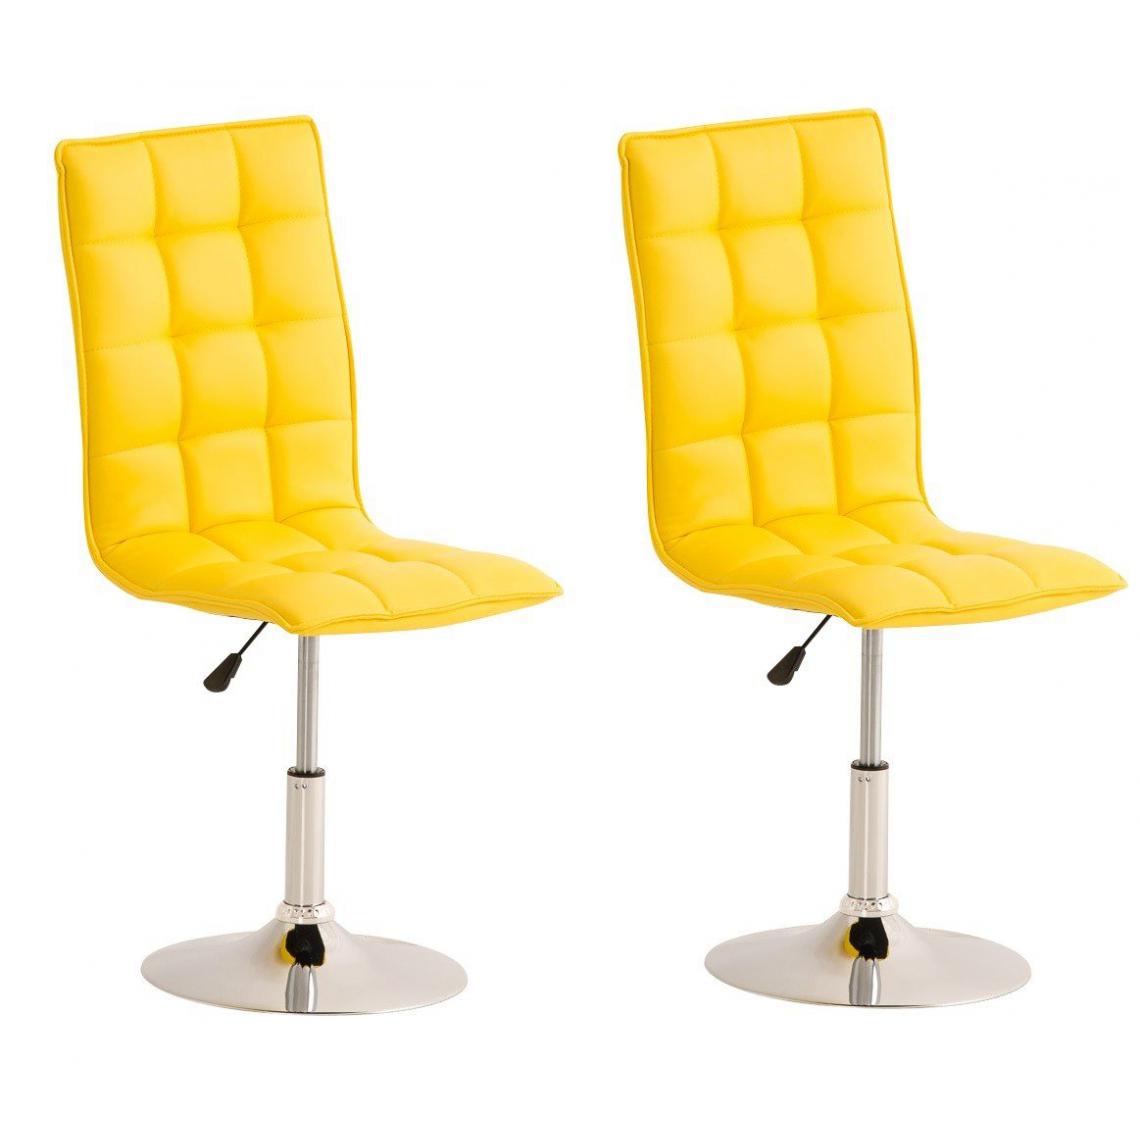 Decoshop26 - Lot de 2 chaises de salle à manger hauteur réglable en simili-cuir jaune CDS10026 - Chaises